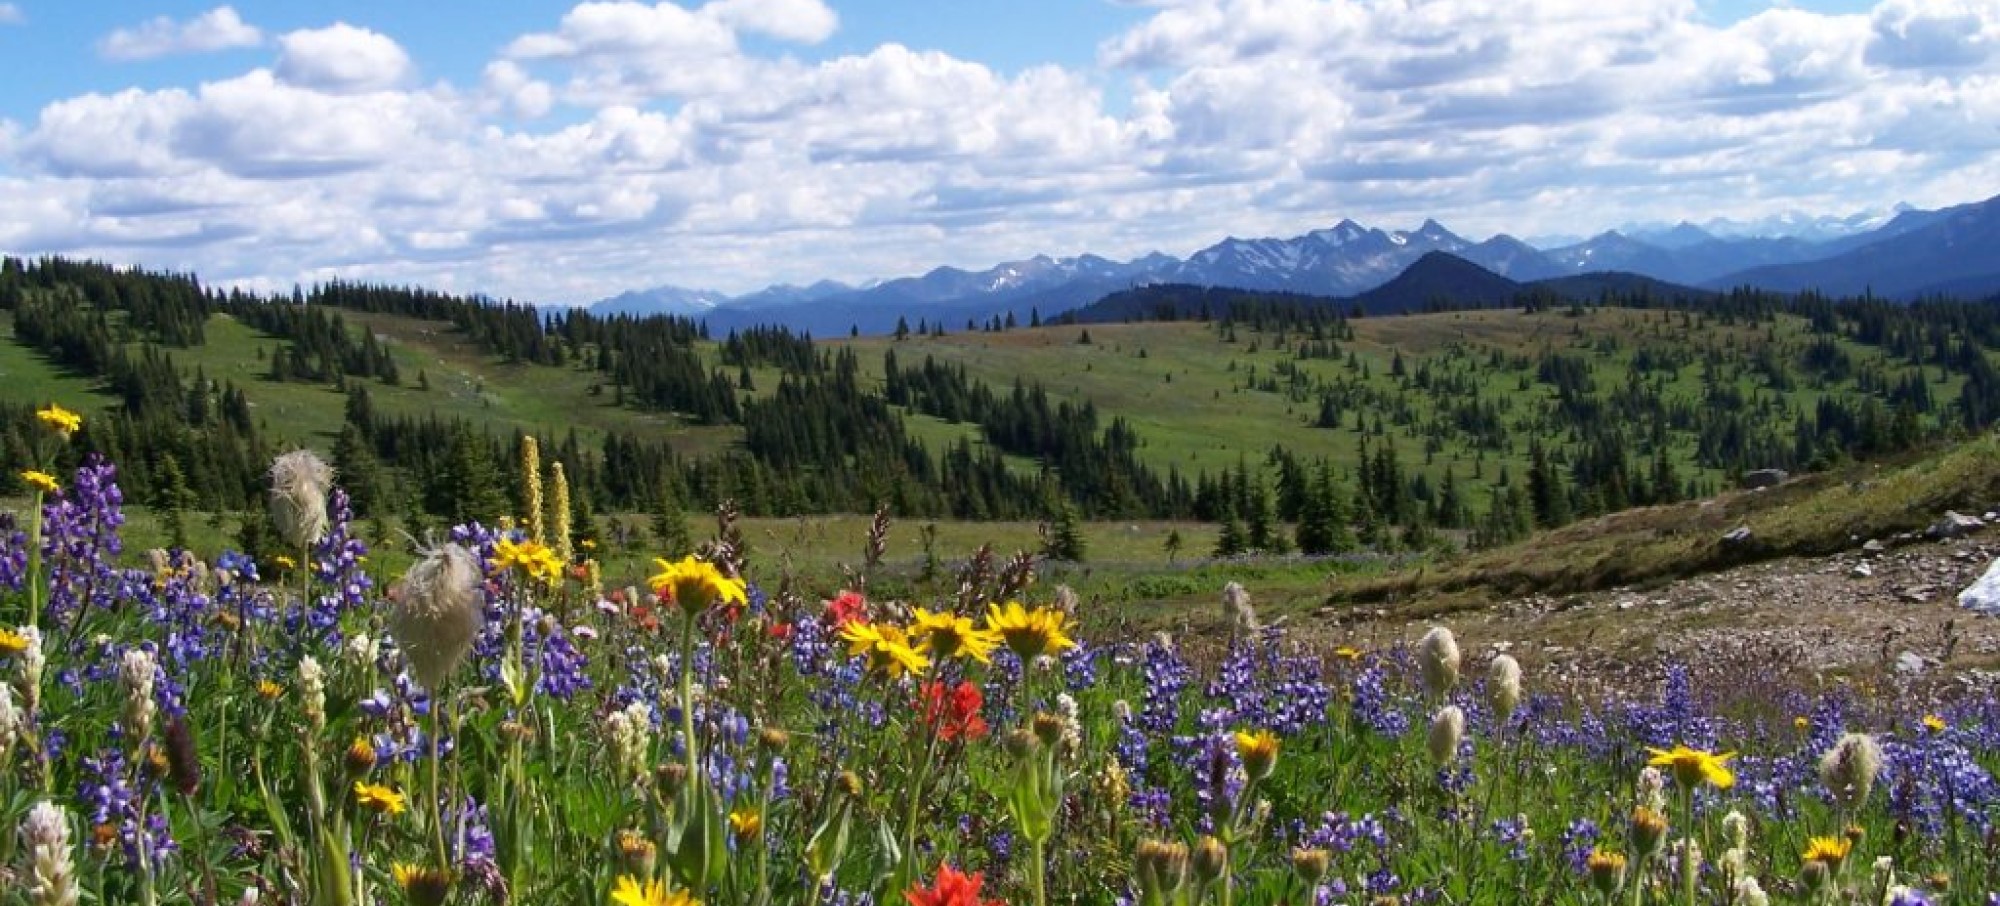 Manning Park Alpine Wild Flowers